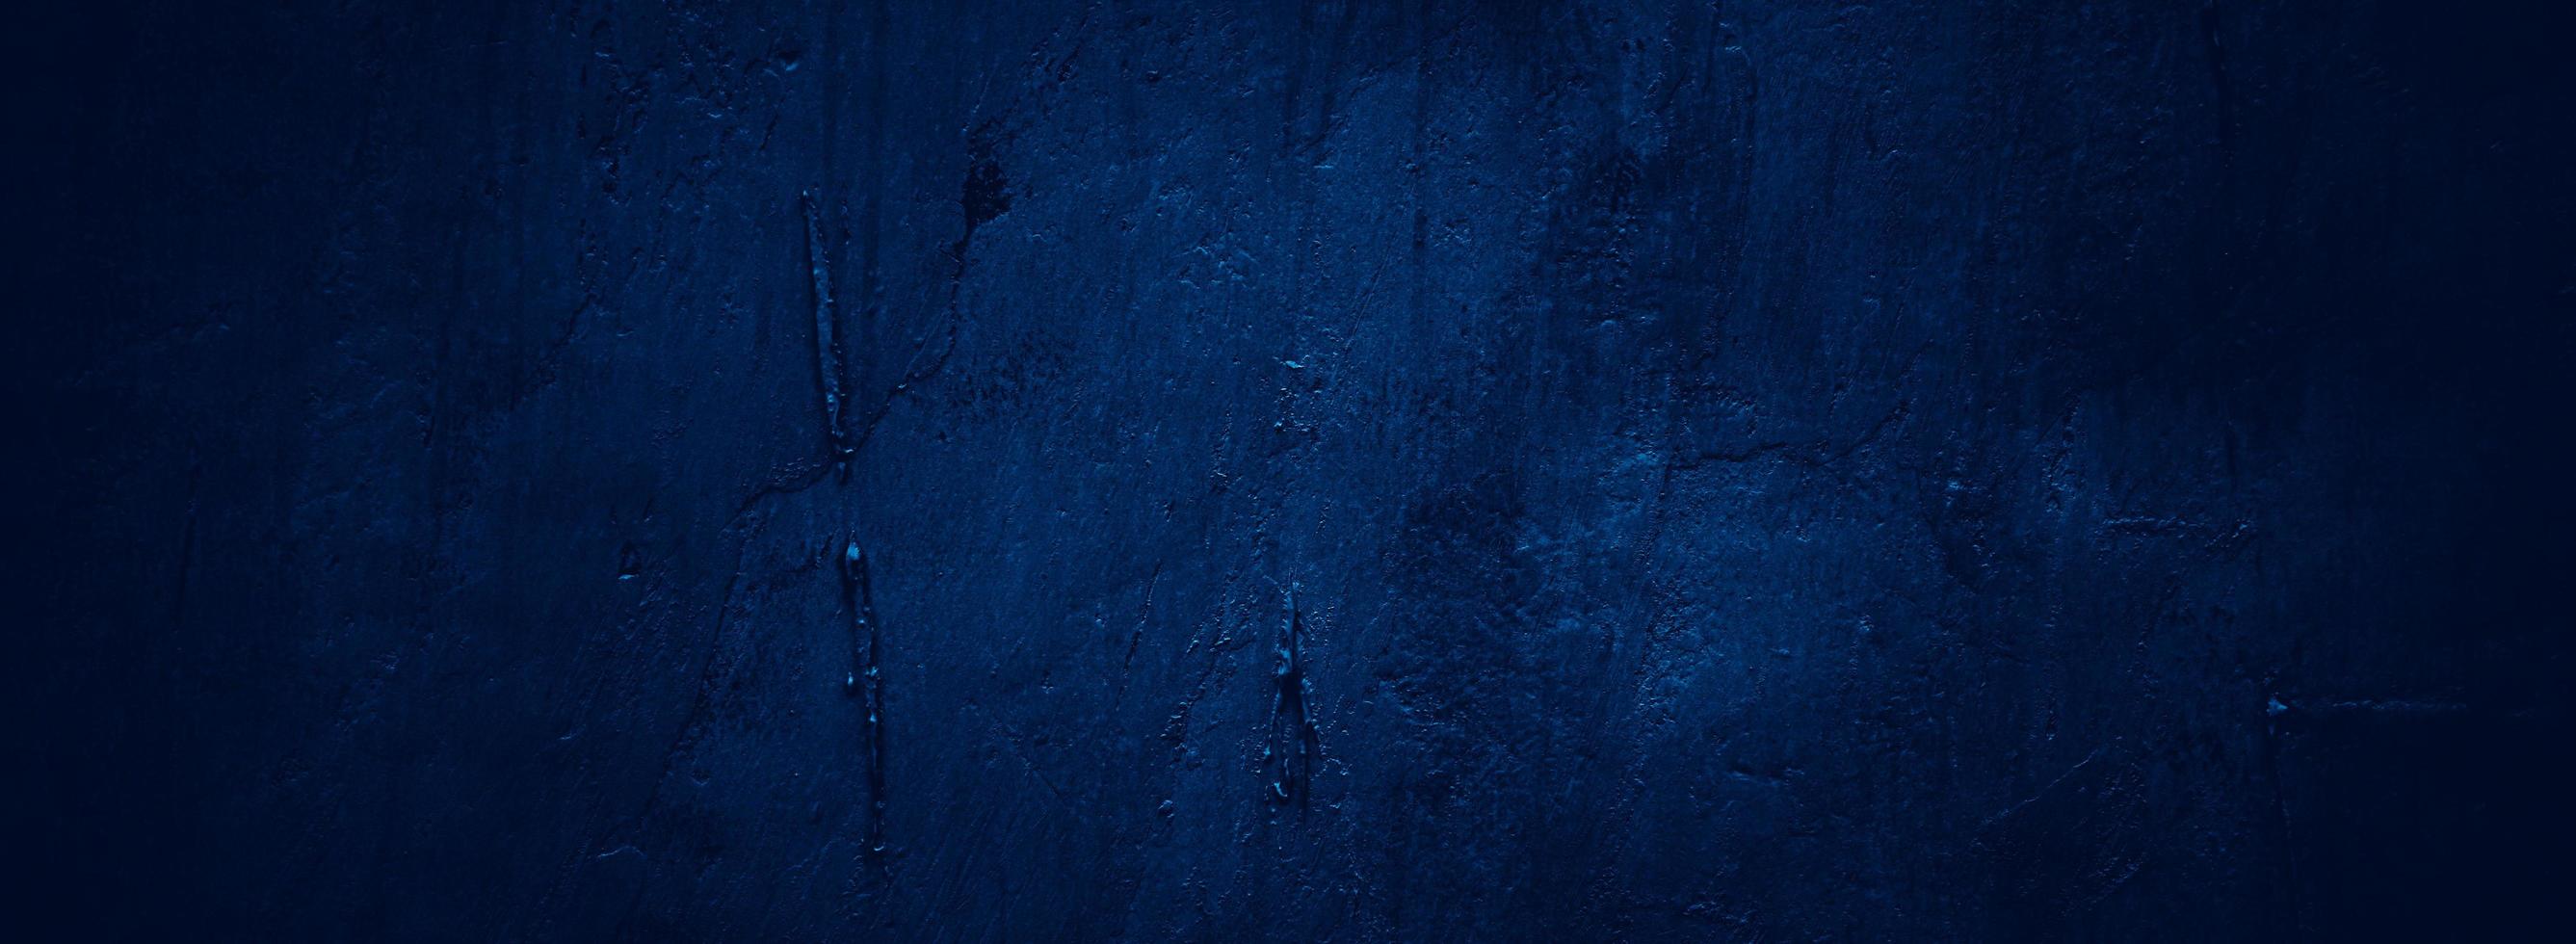 abstract donker grunge blauw muur structuur achtergrond foto